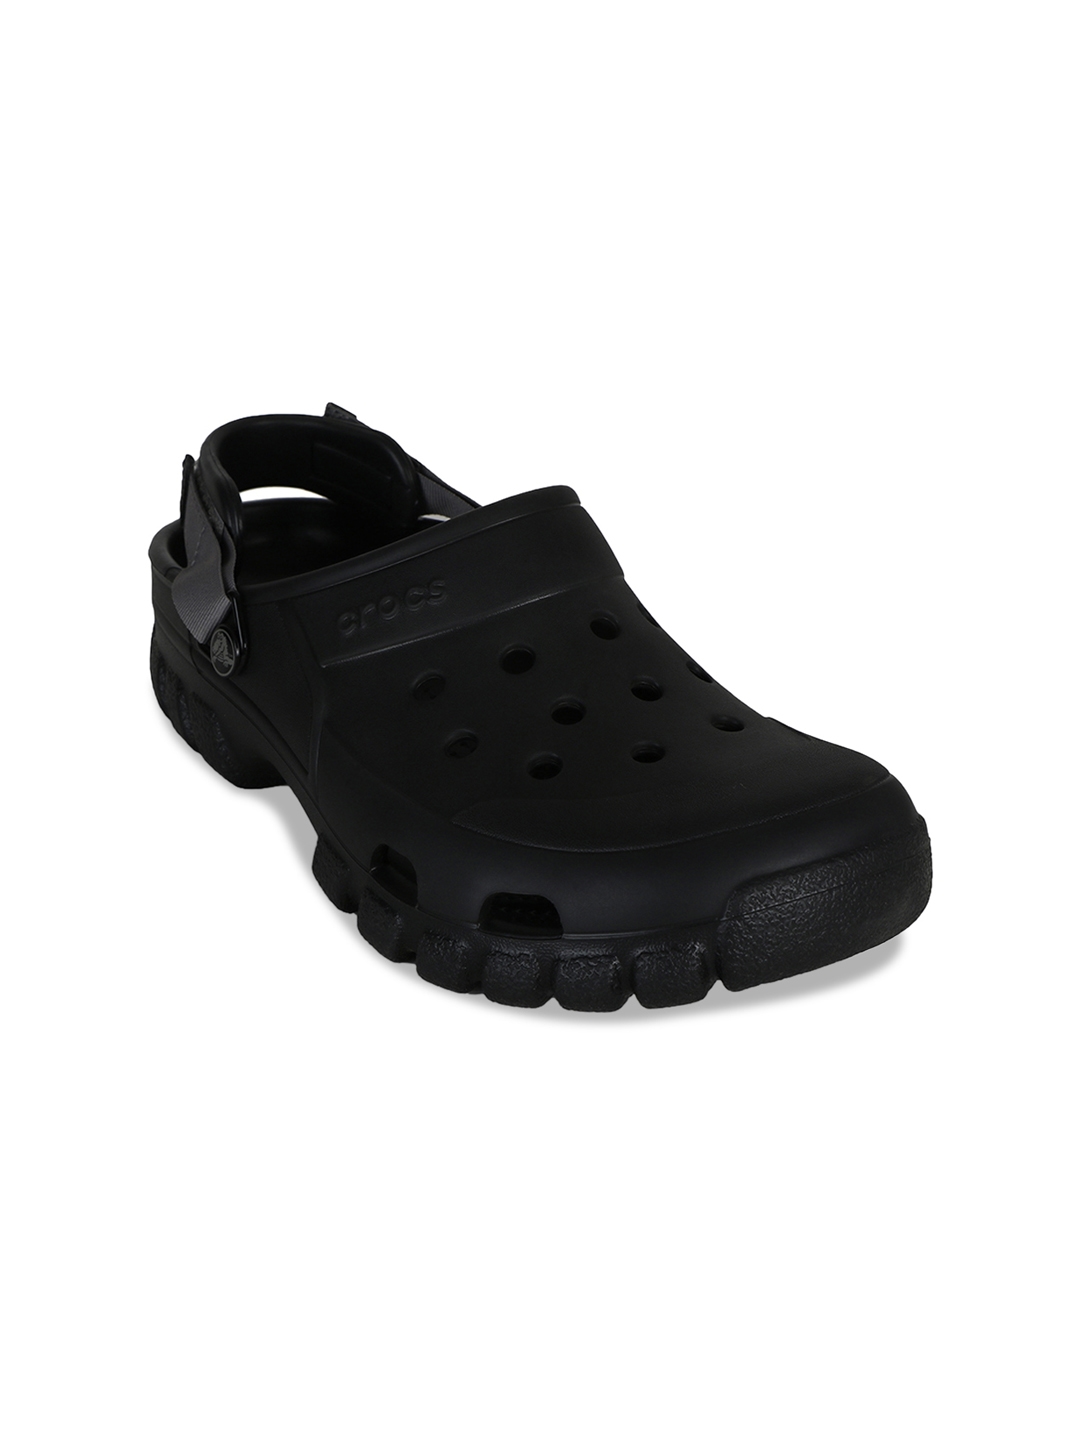 solid black crocs